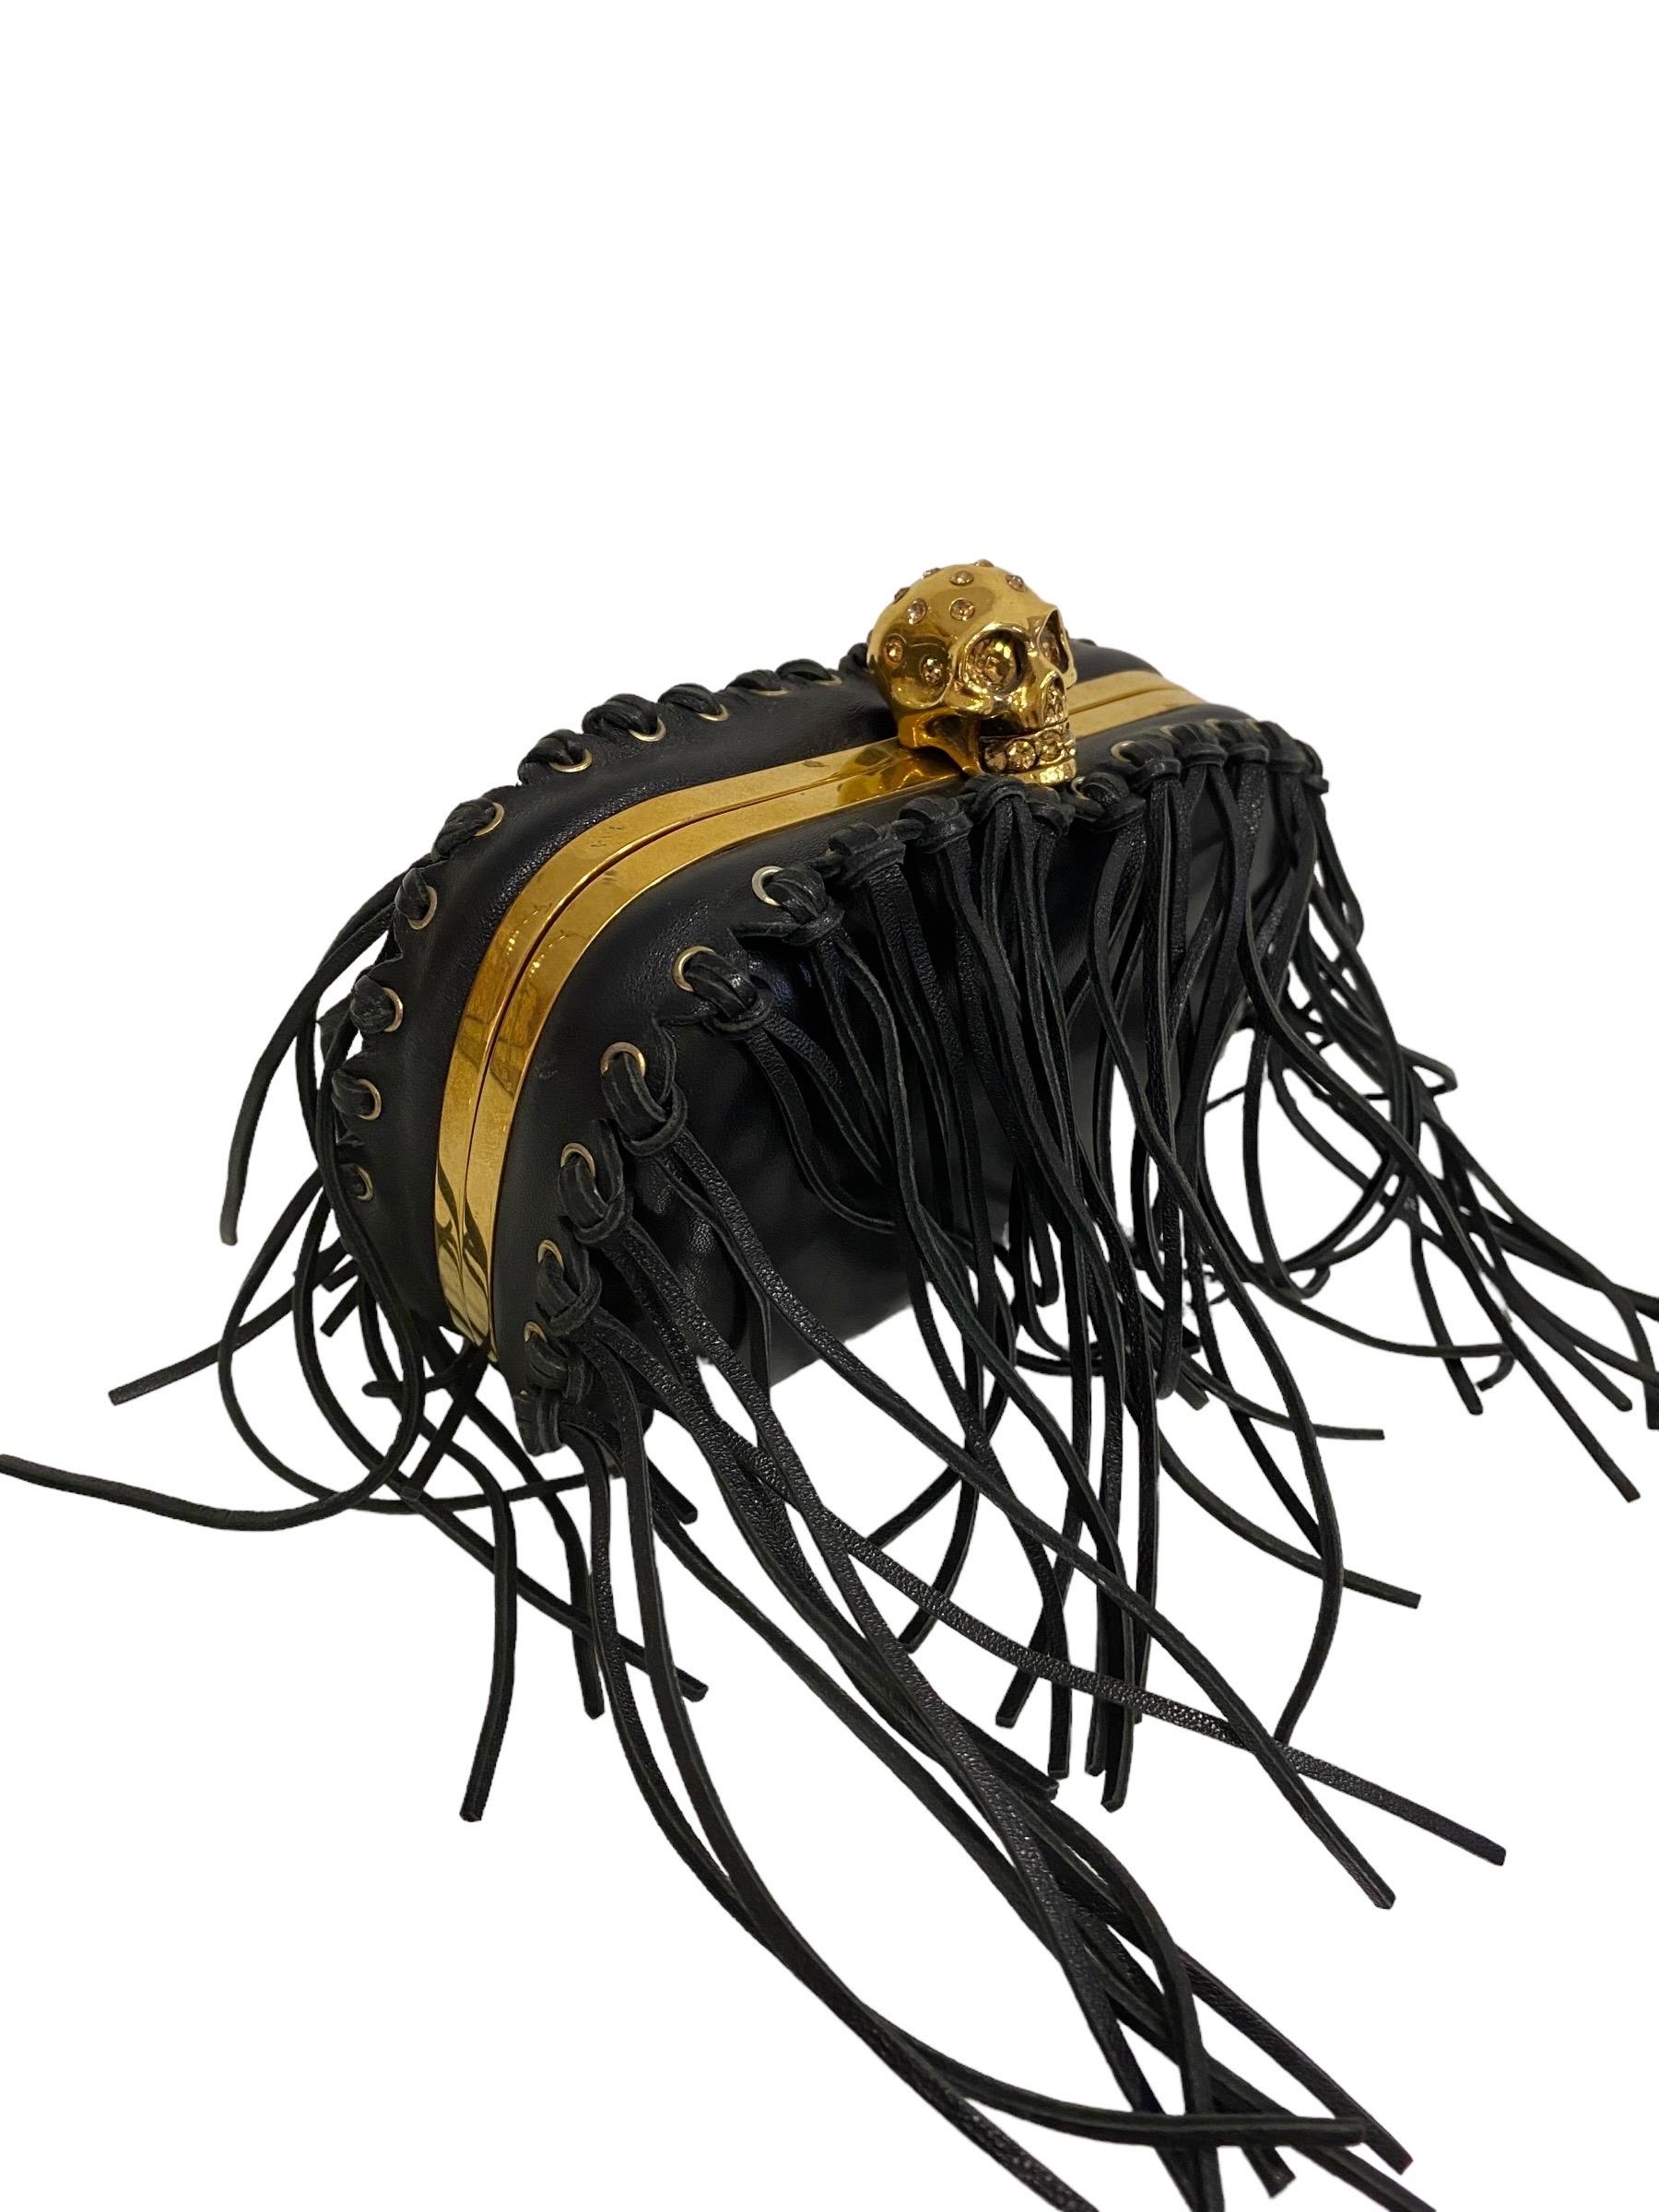 Alexander McQueen Skull Clutch Black Top Handle Bag In Good Condition In Torre Del Greco, IT